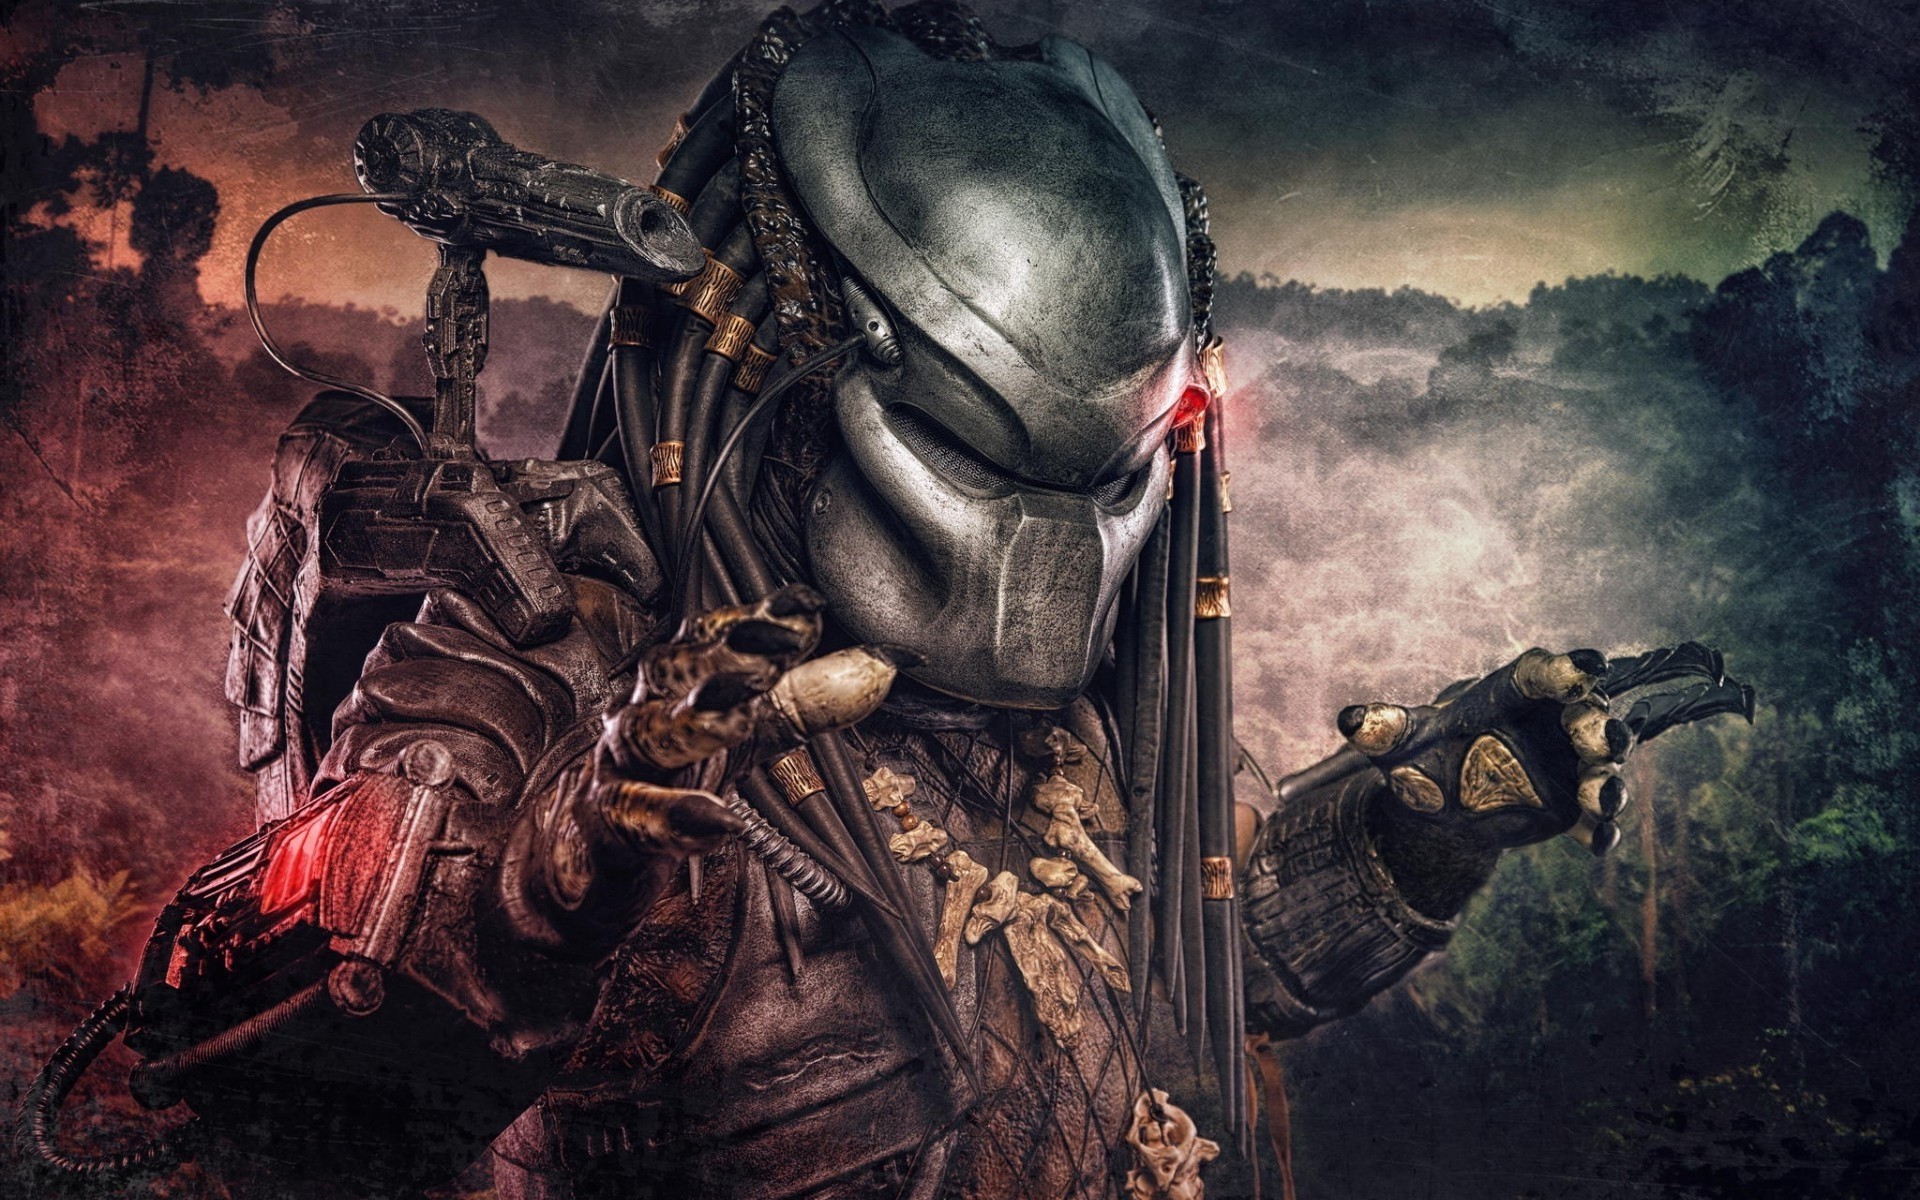 download alien vs predator 3 full movie